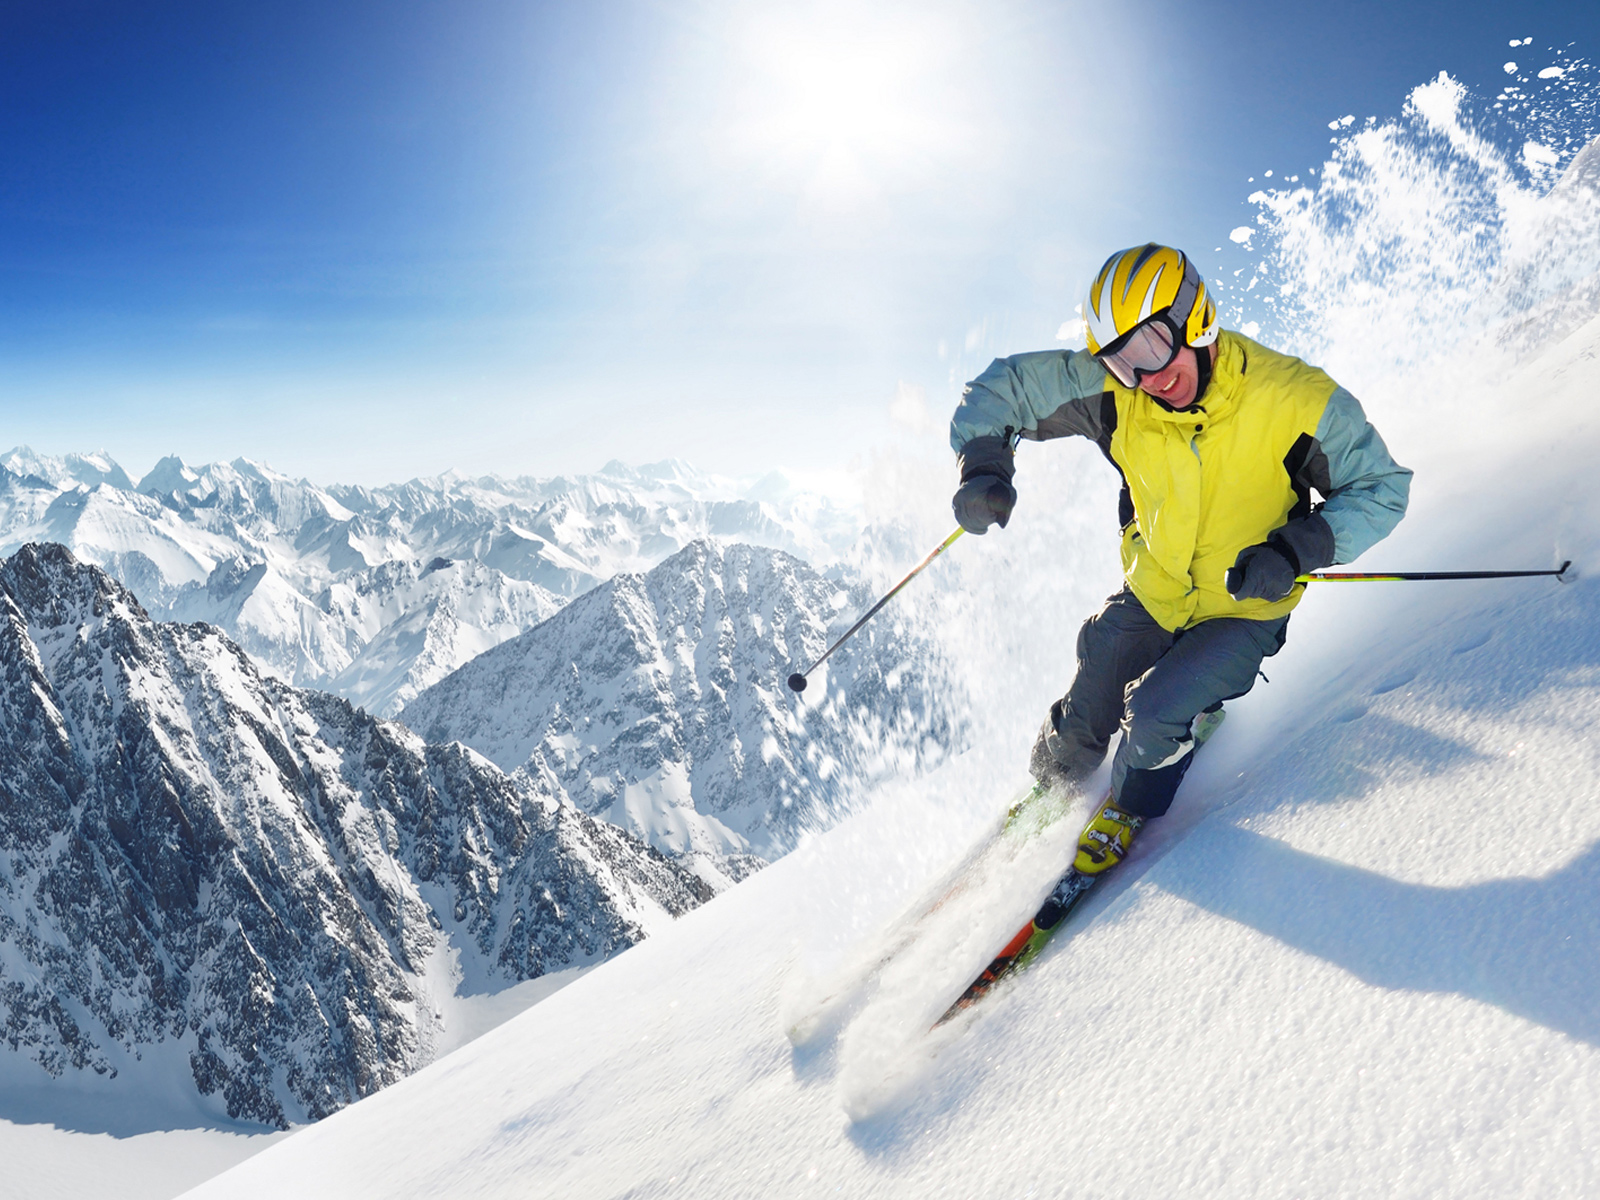 Mountain Ski Winter On Snowy Mountains Desktop Sports